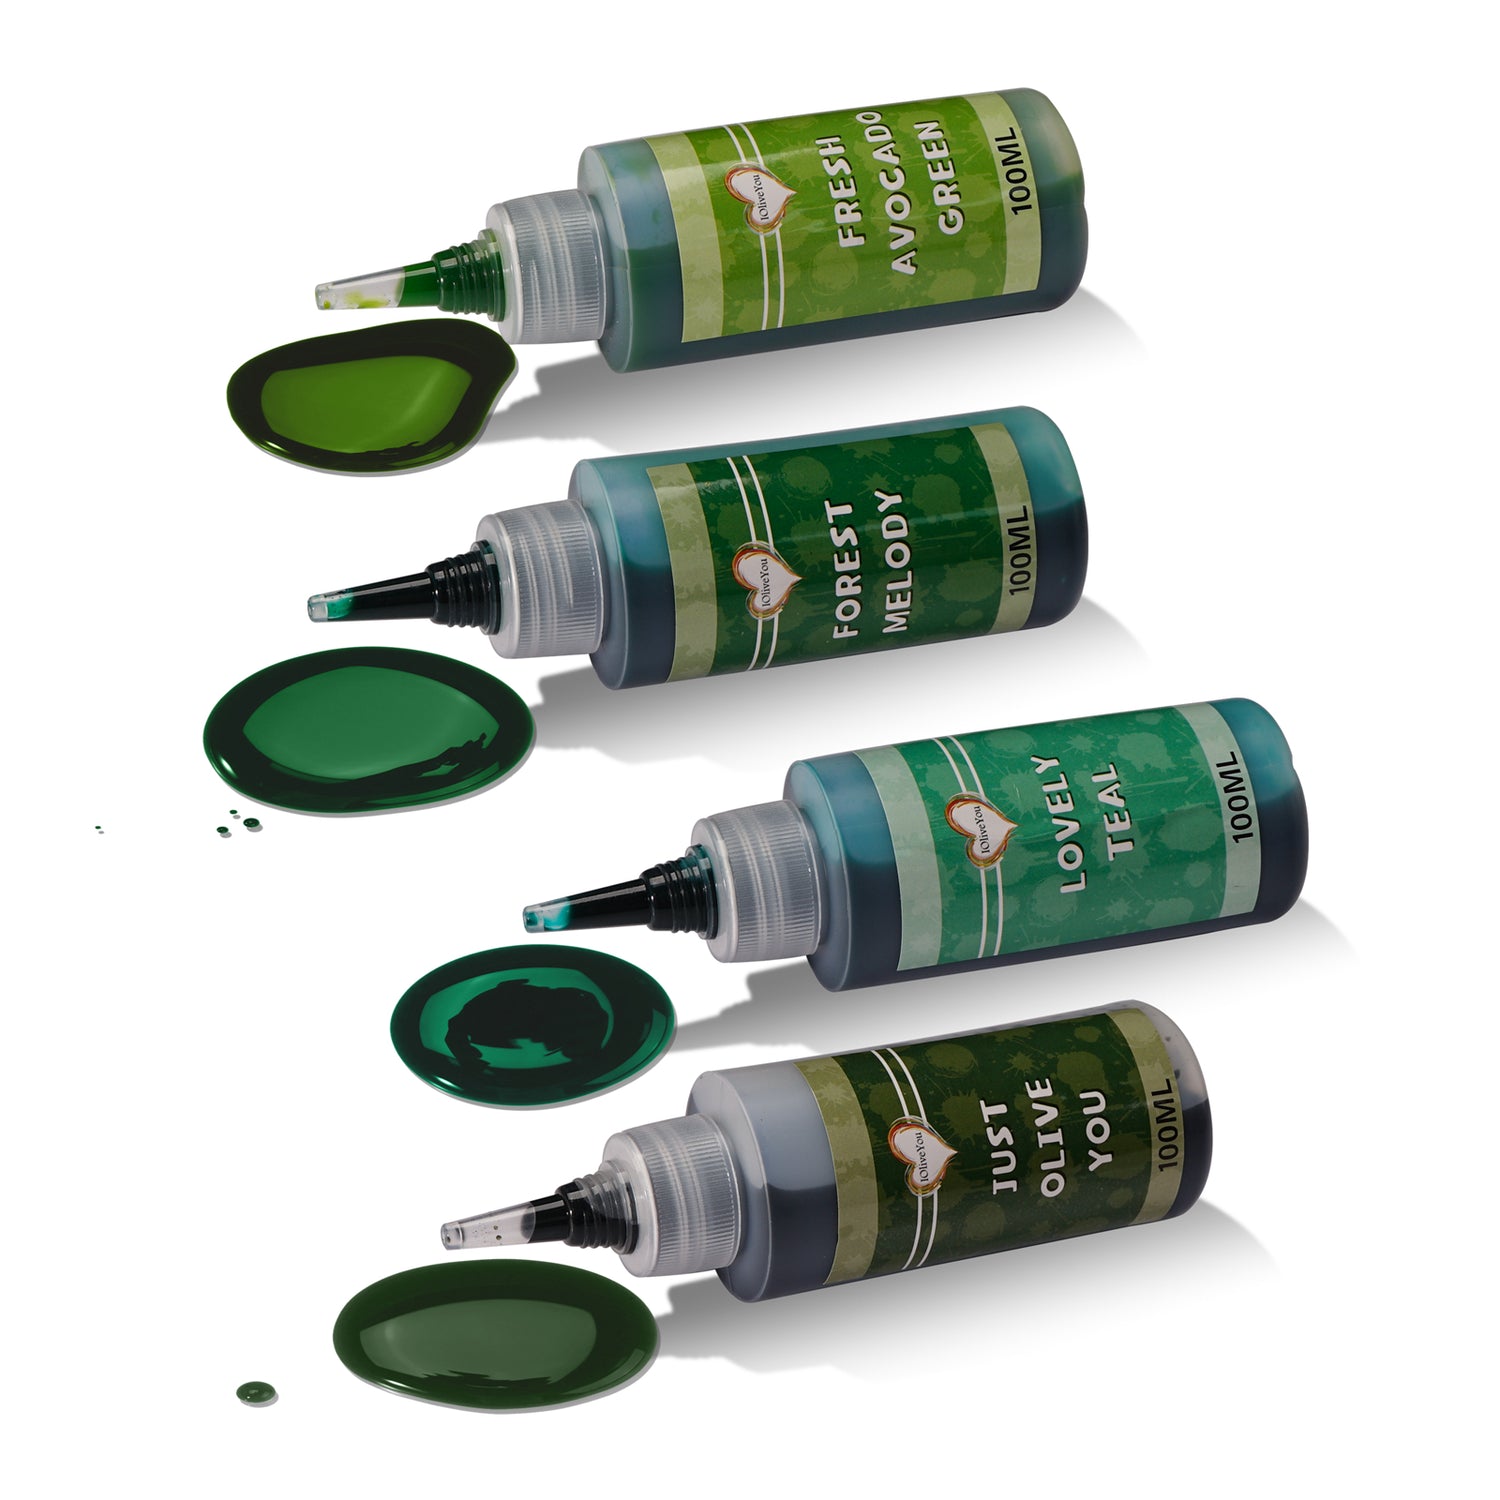 Olive, Teal & Green Tie Dye Colors in Fancy Plants Greens Tie Dye Kit (Tye Dye F